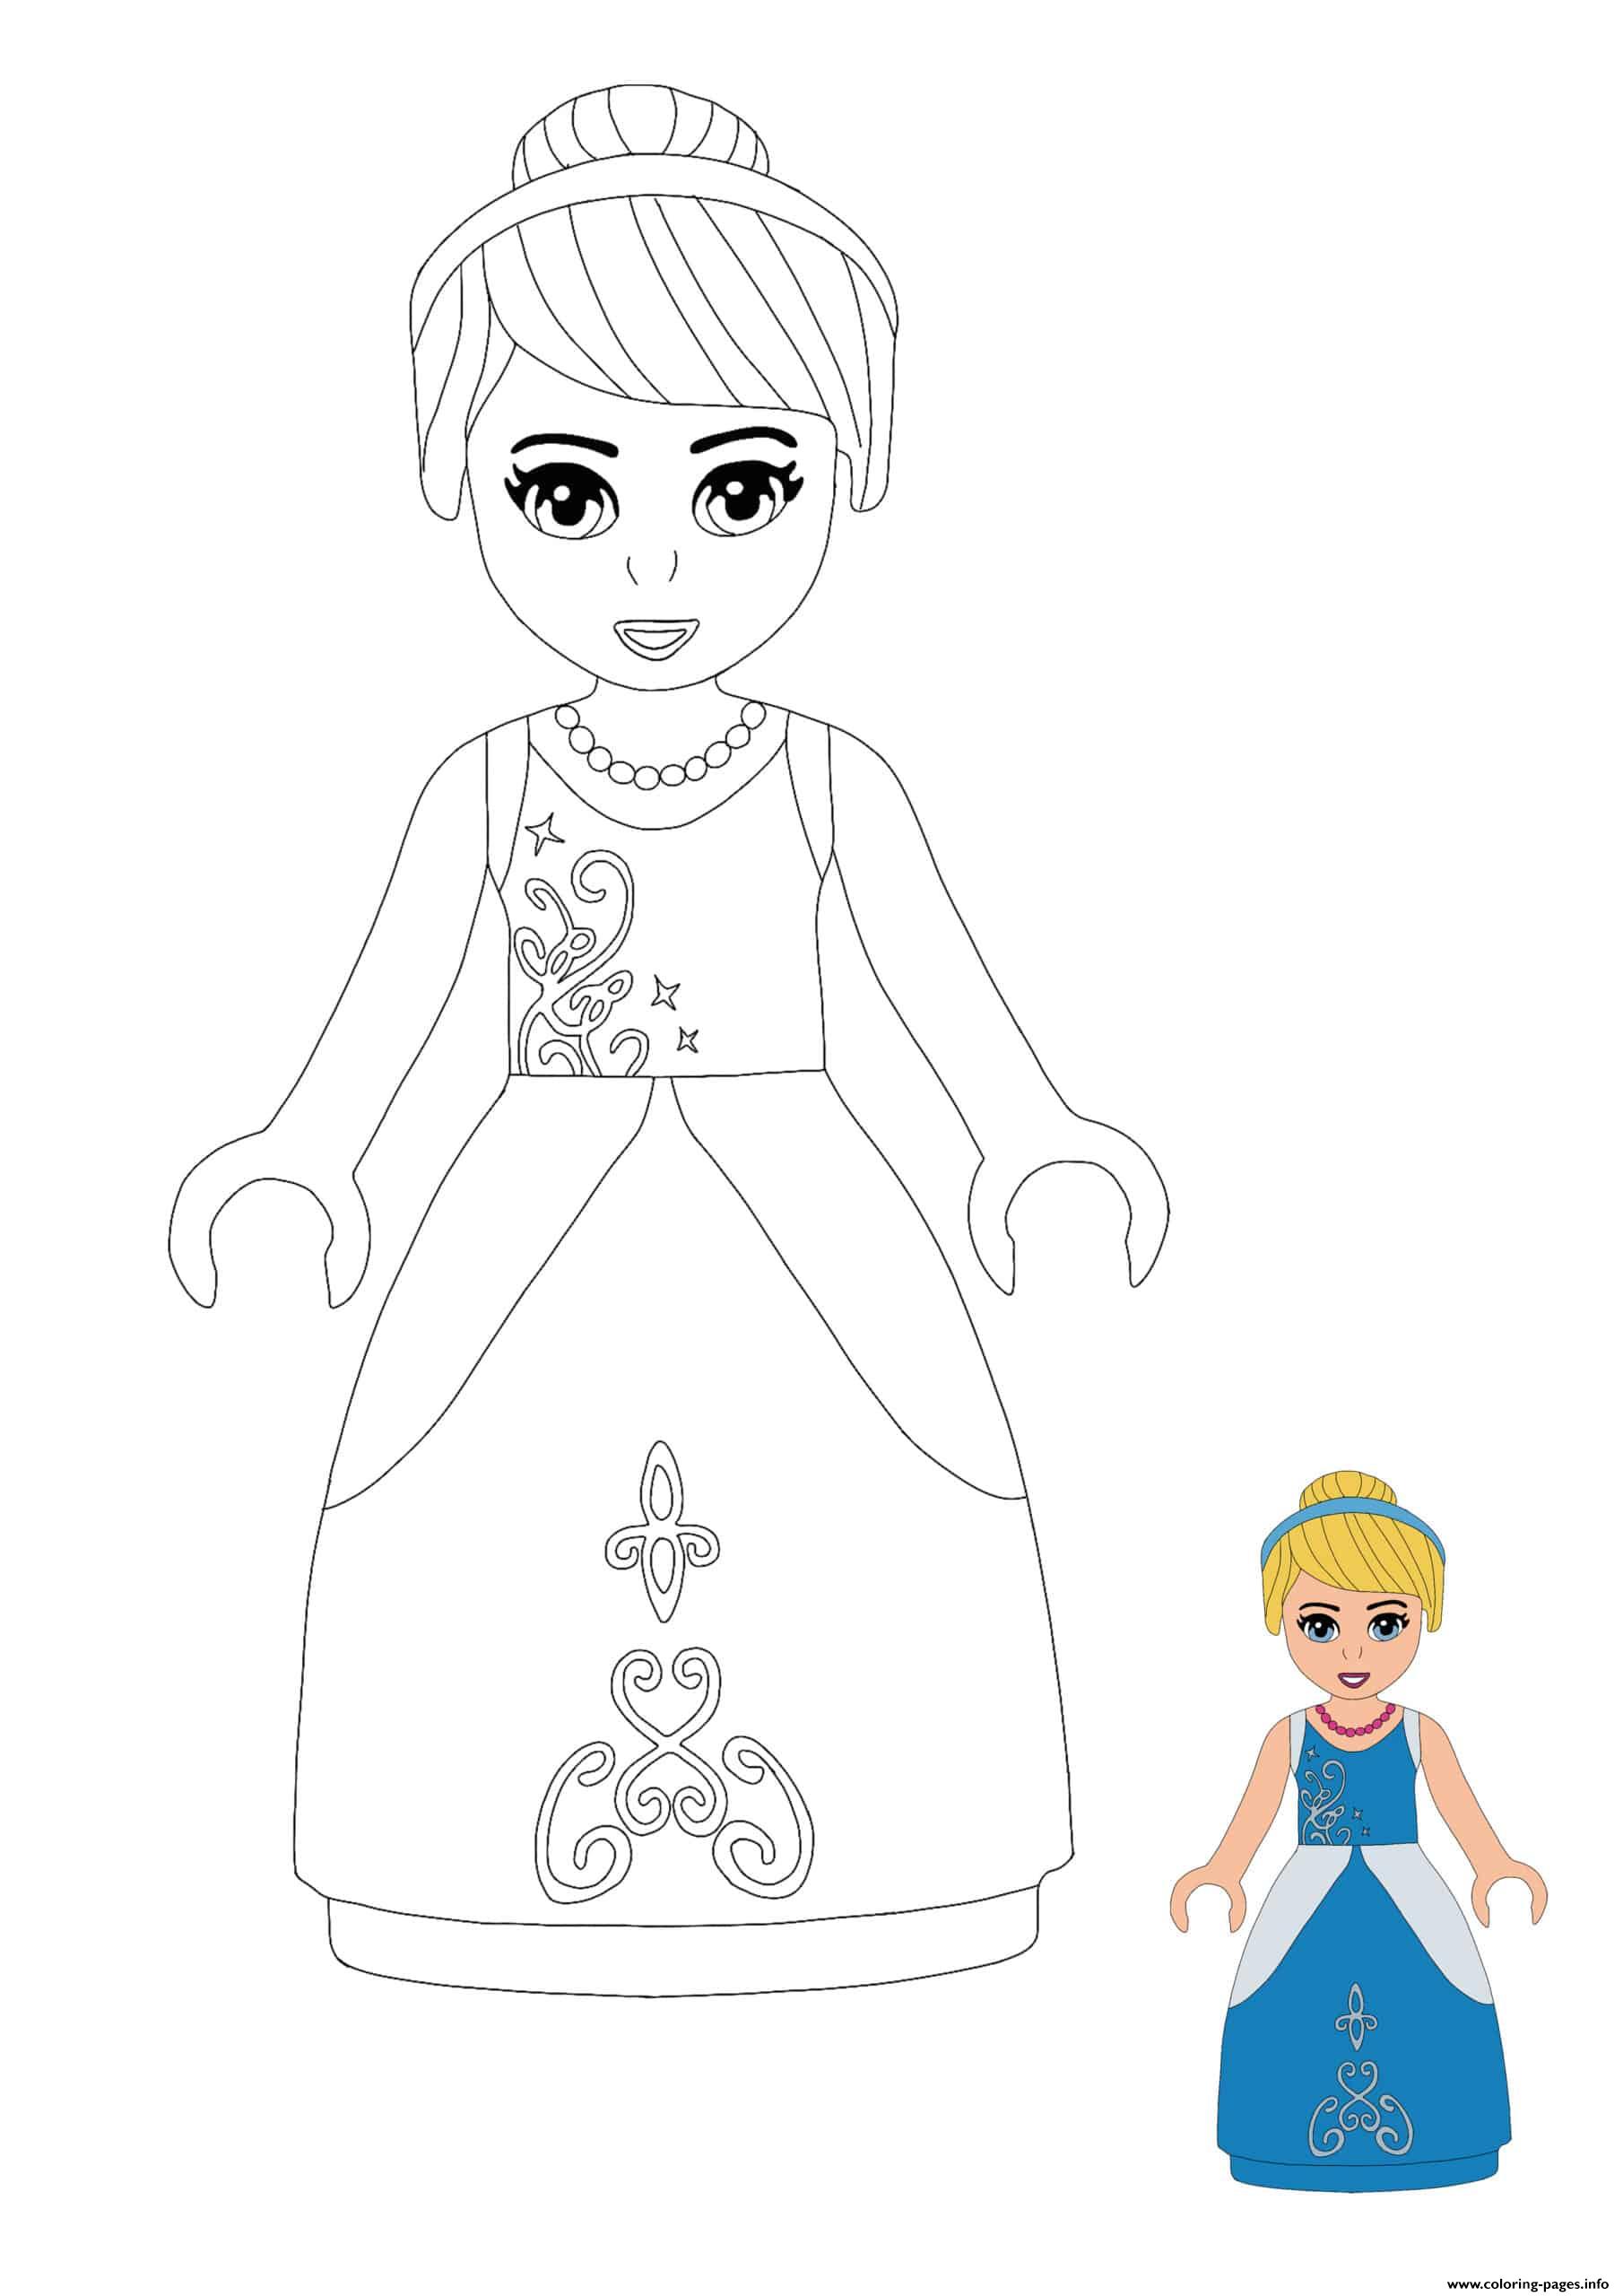 Lego Princess Cinderella coloring